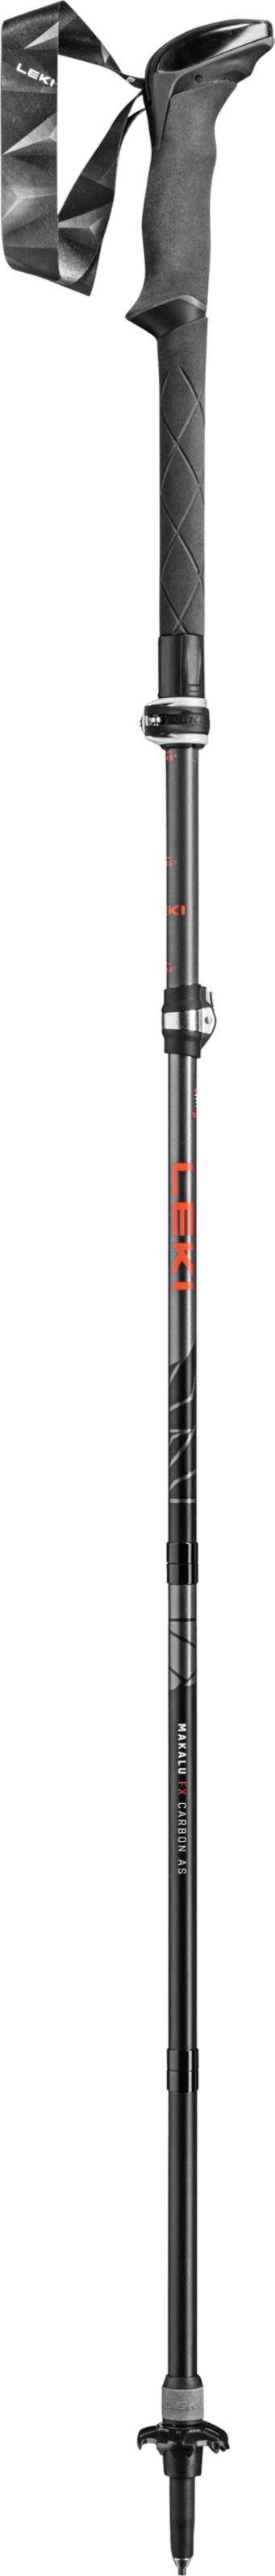 LEKI Makalu FX Carbon AS Unisex Trekking Poles 110-130cm 